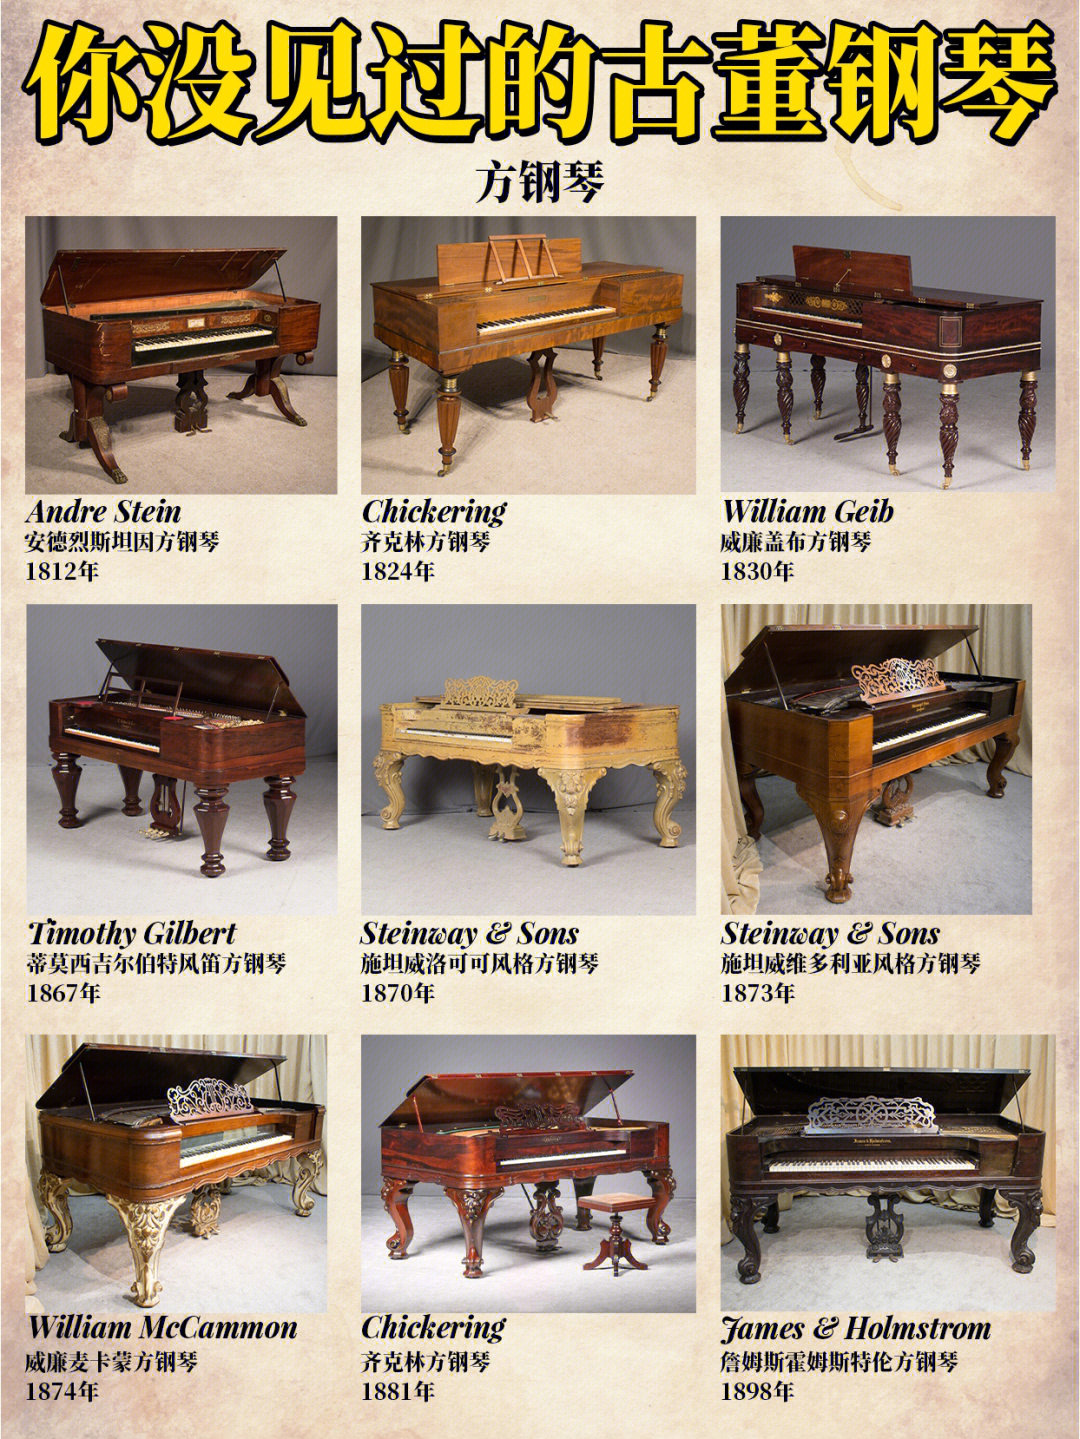 93方钢琴于1742年由约翰修夏发明,92151830年方钢琴占据欧洲